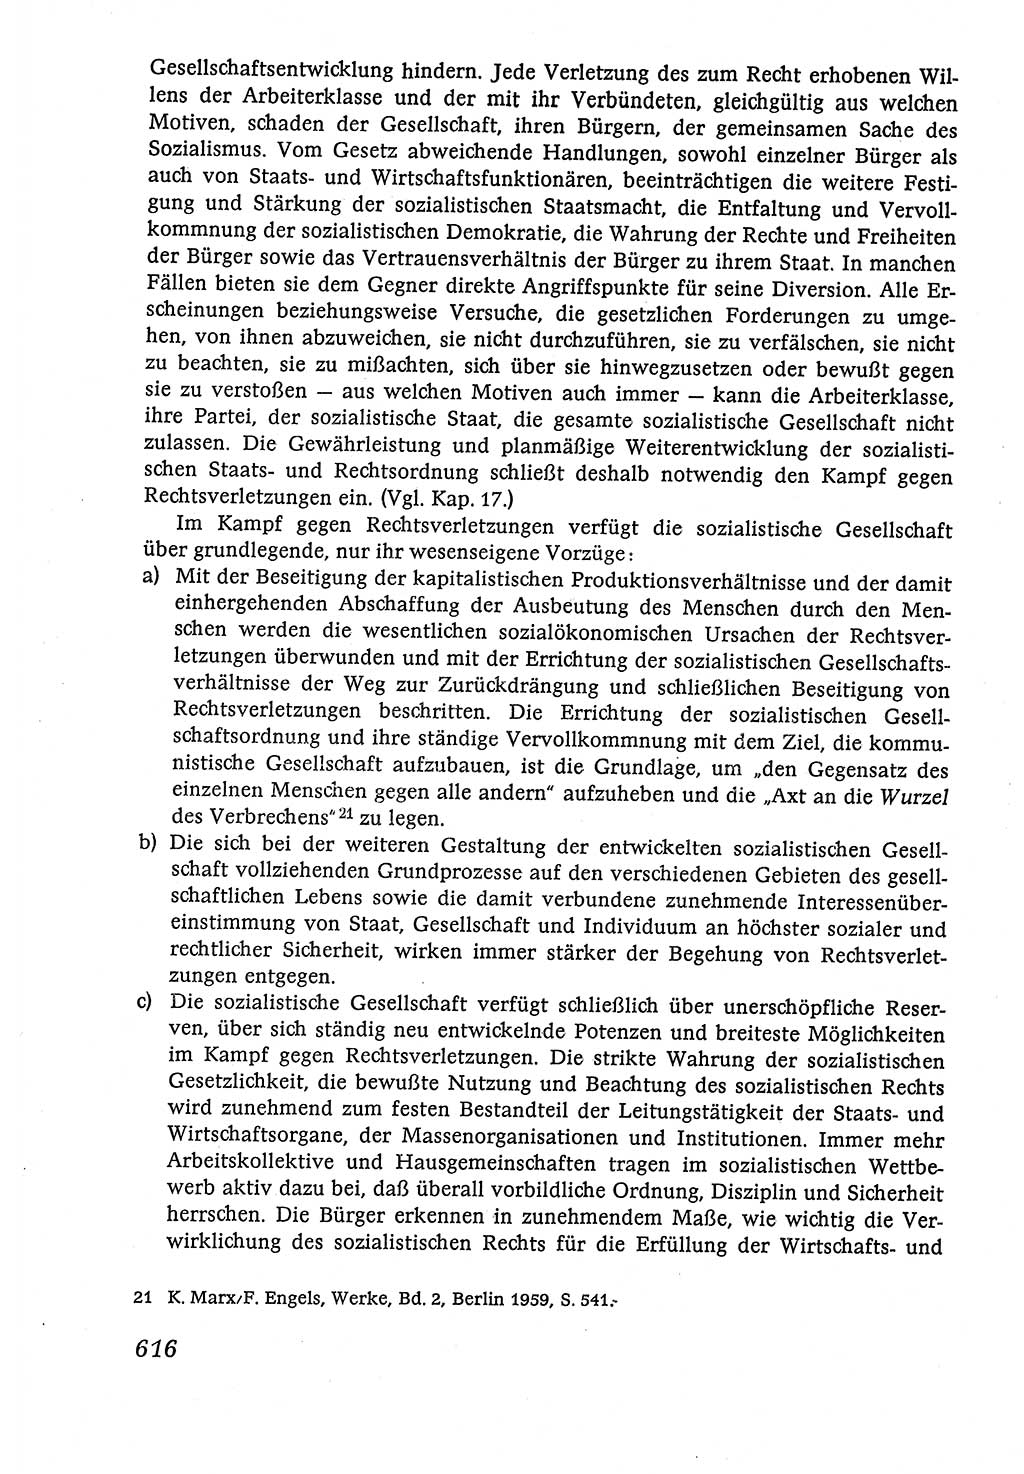 Marxistisch-leninistische (ML) Staats- und Rechtstheorie [Deutsche Demokratische Republik (DDR)], Lehrbuch 1980, Seite 616 (ML St.-R.-Th. DDR Lb. 1980, S. 616)